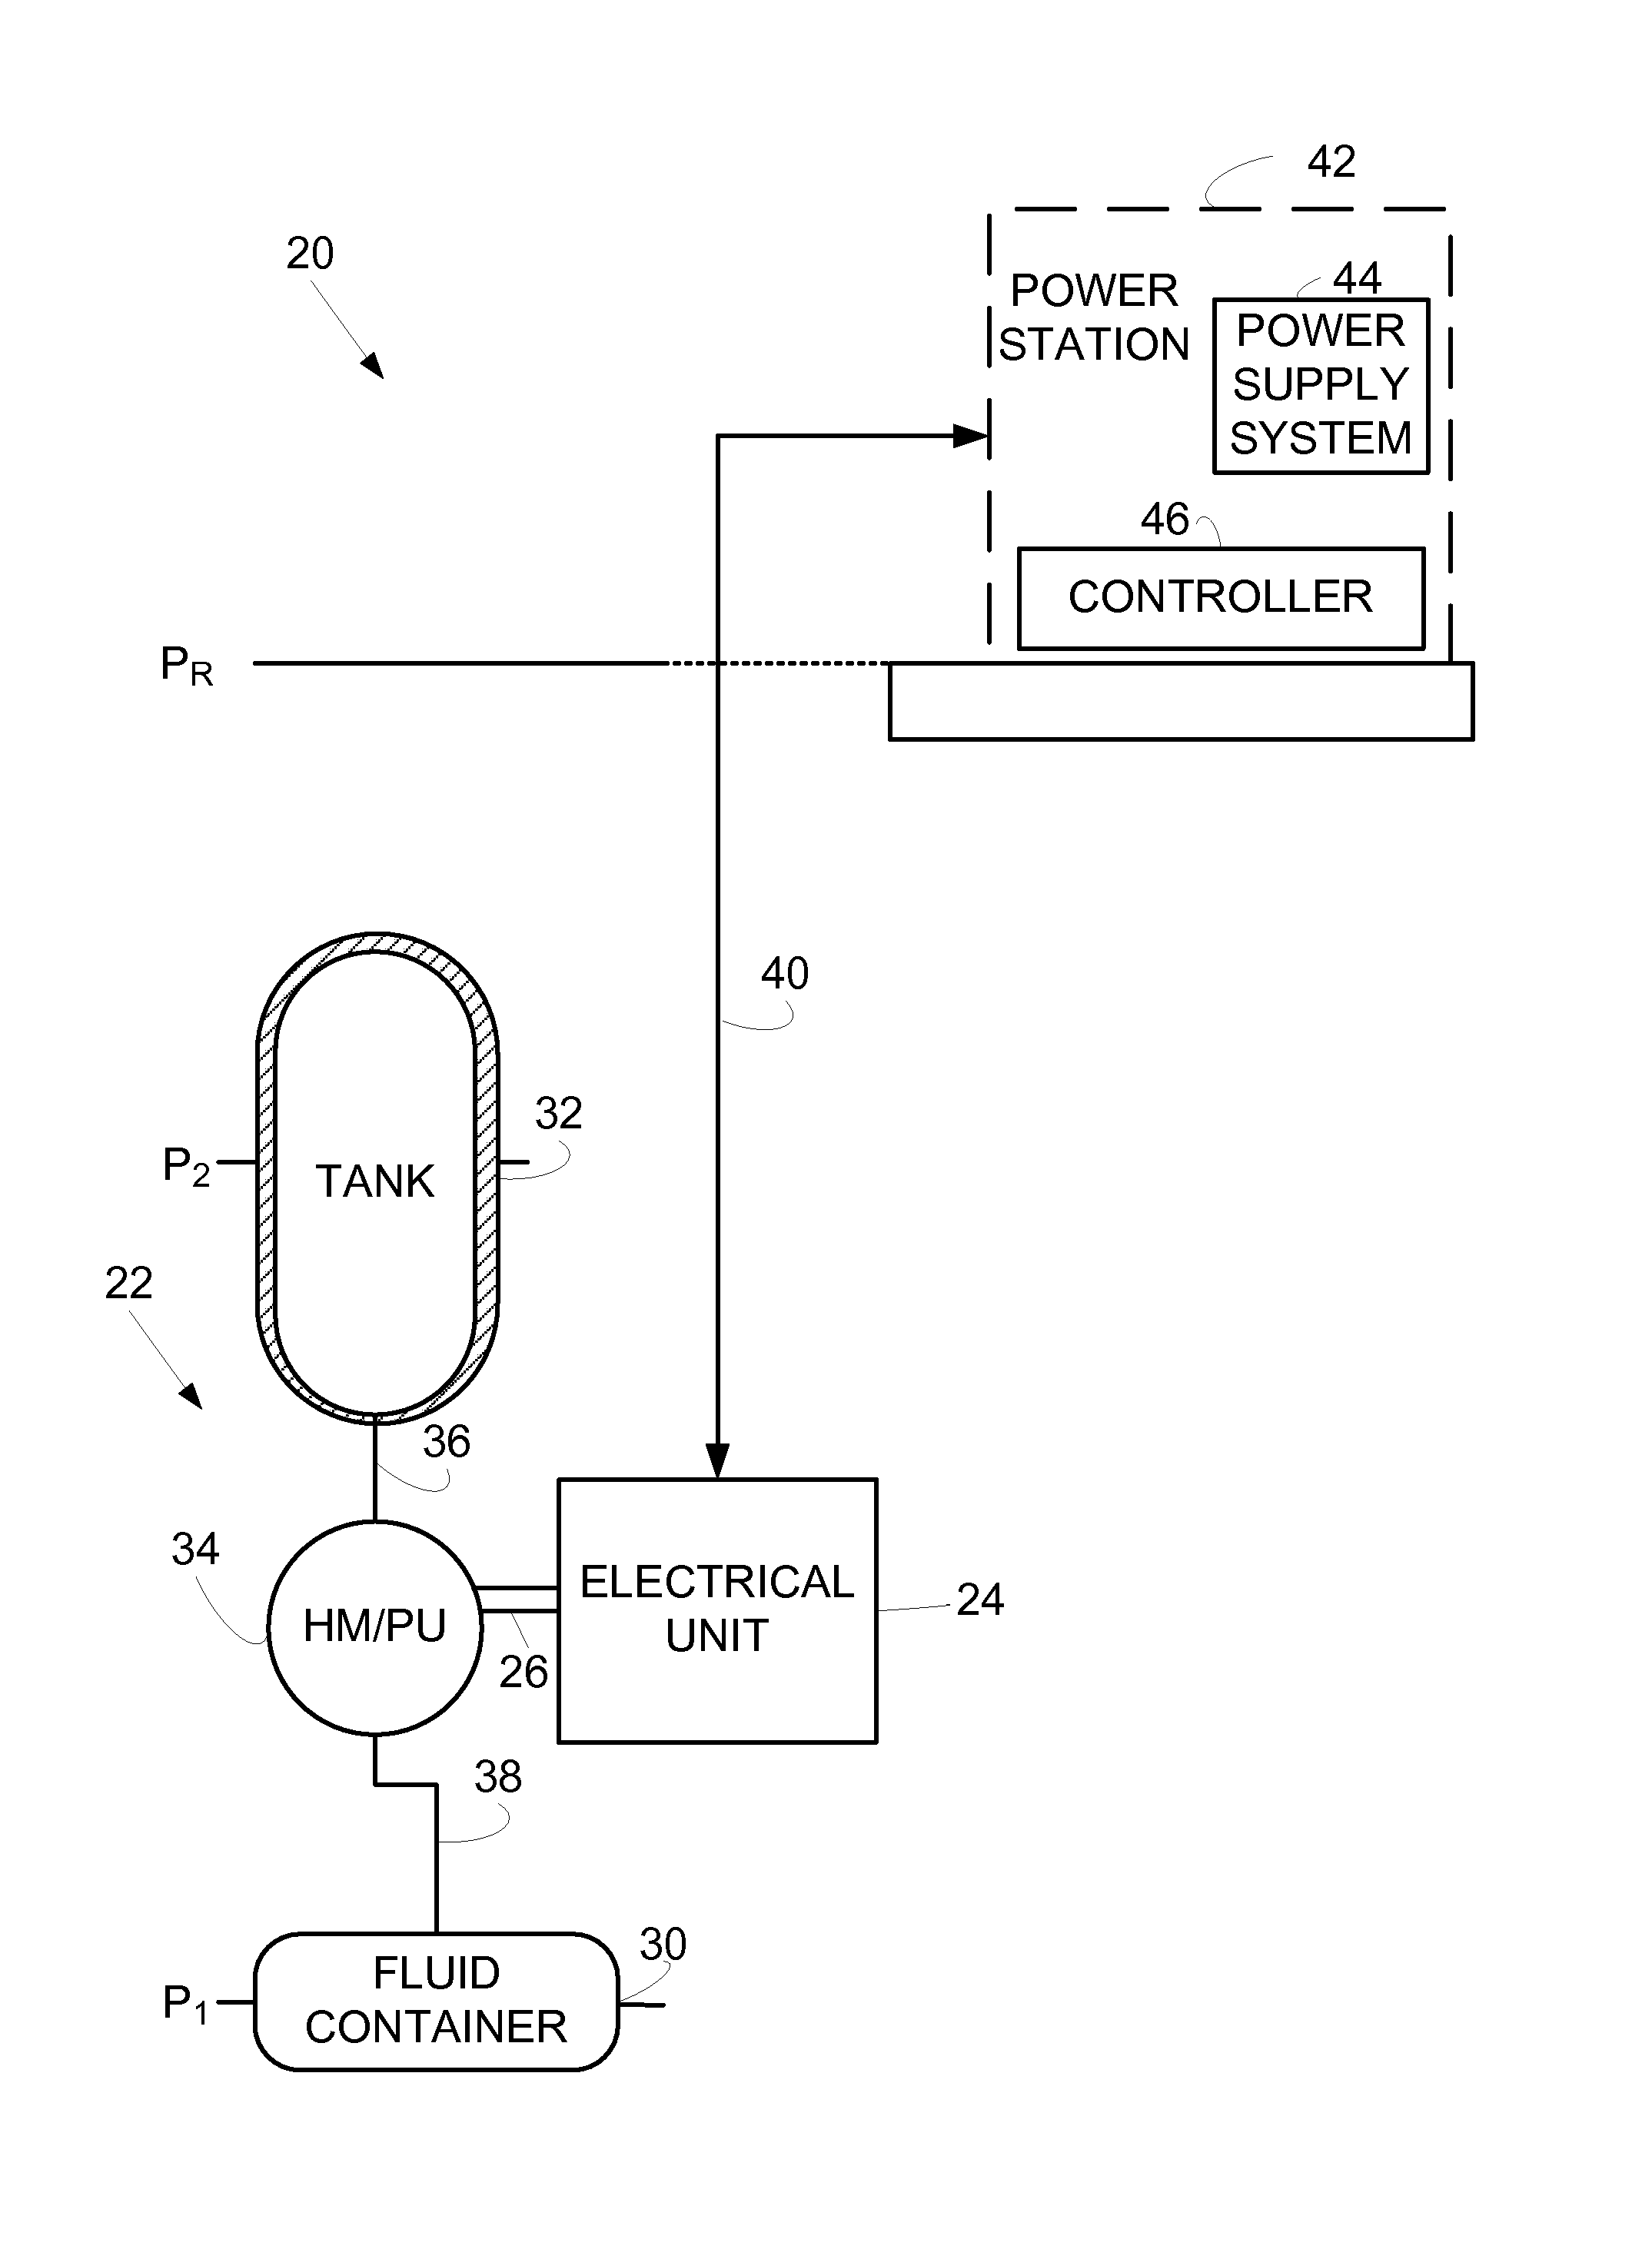 Hydraulic energy accumulator